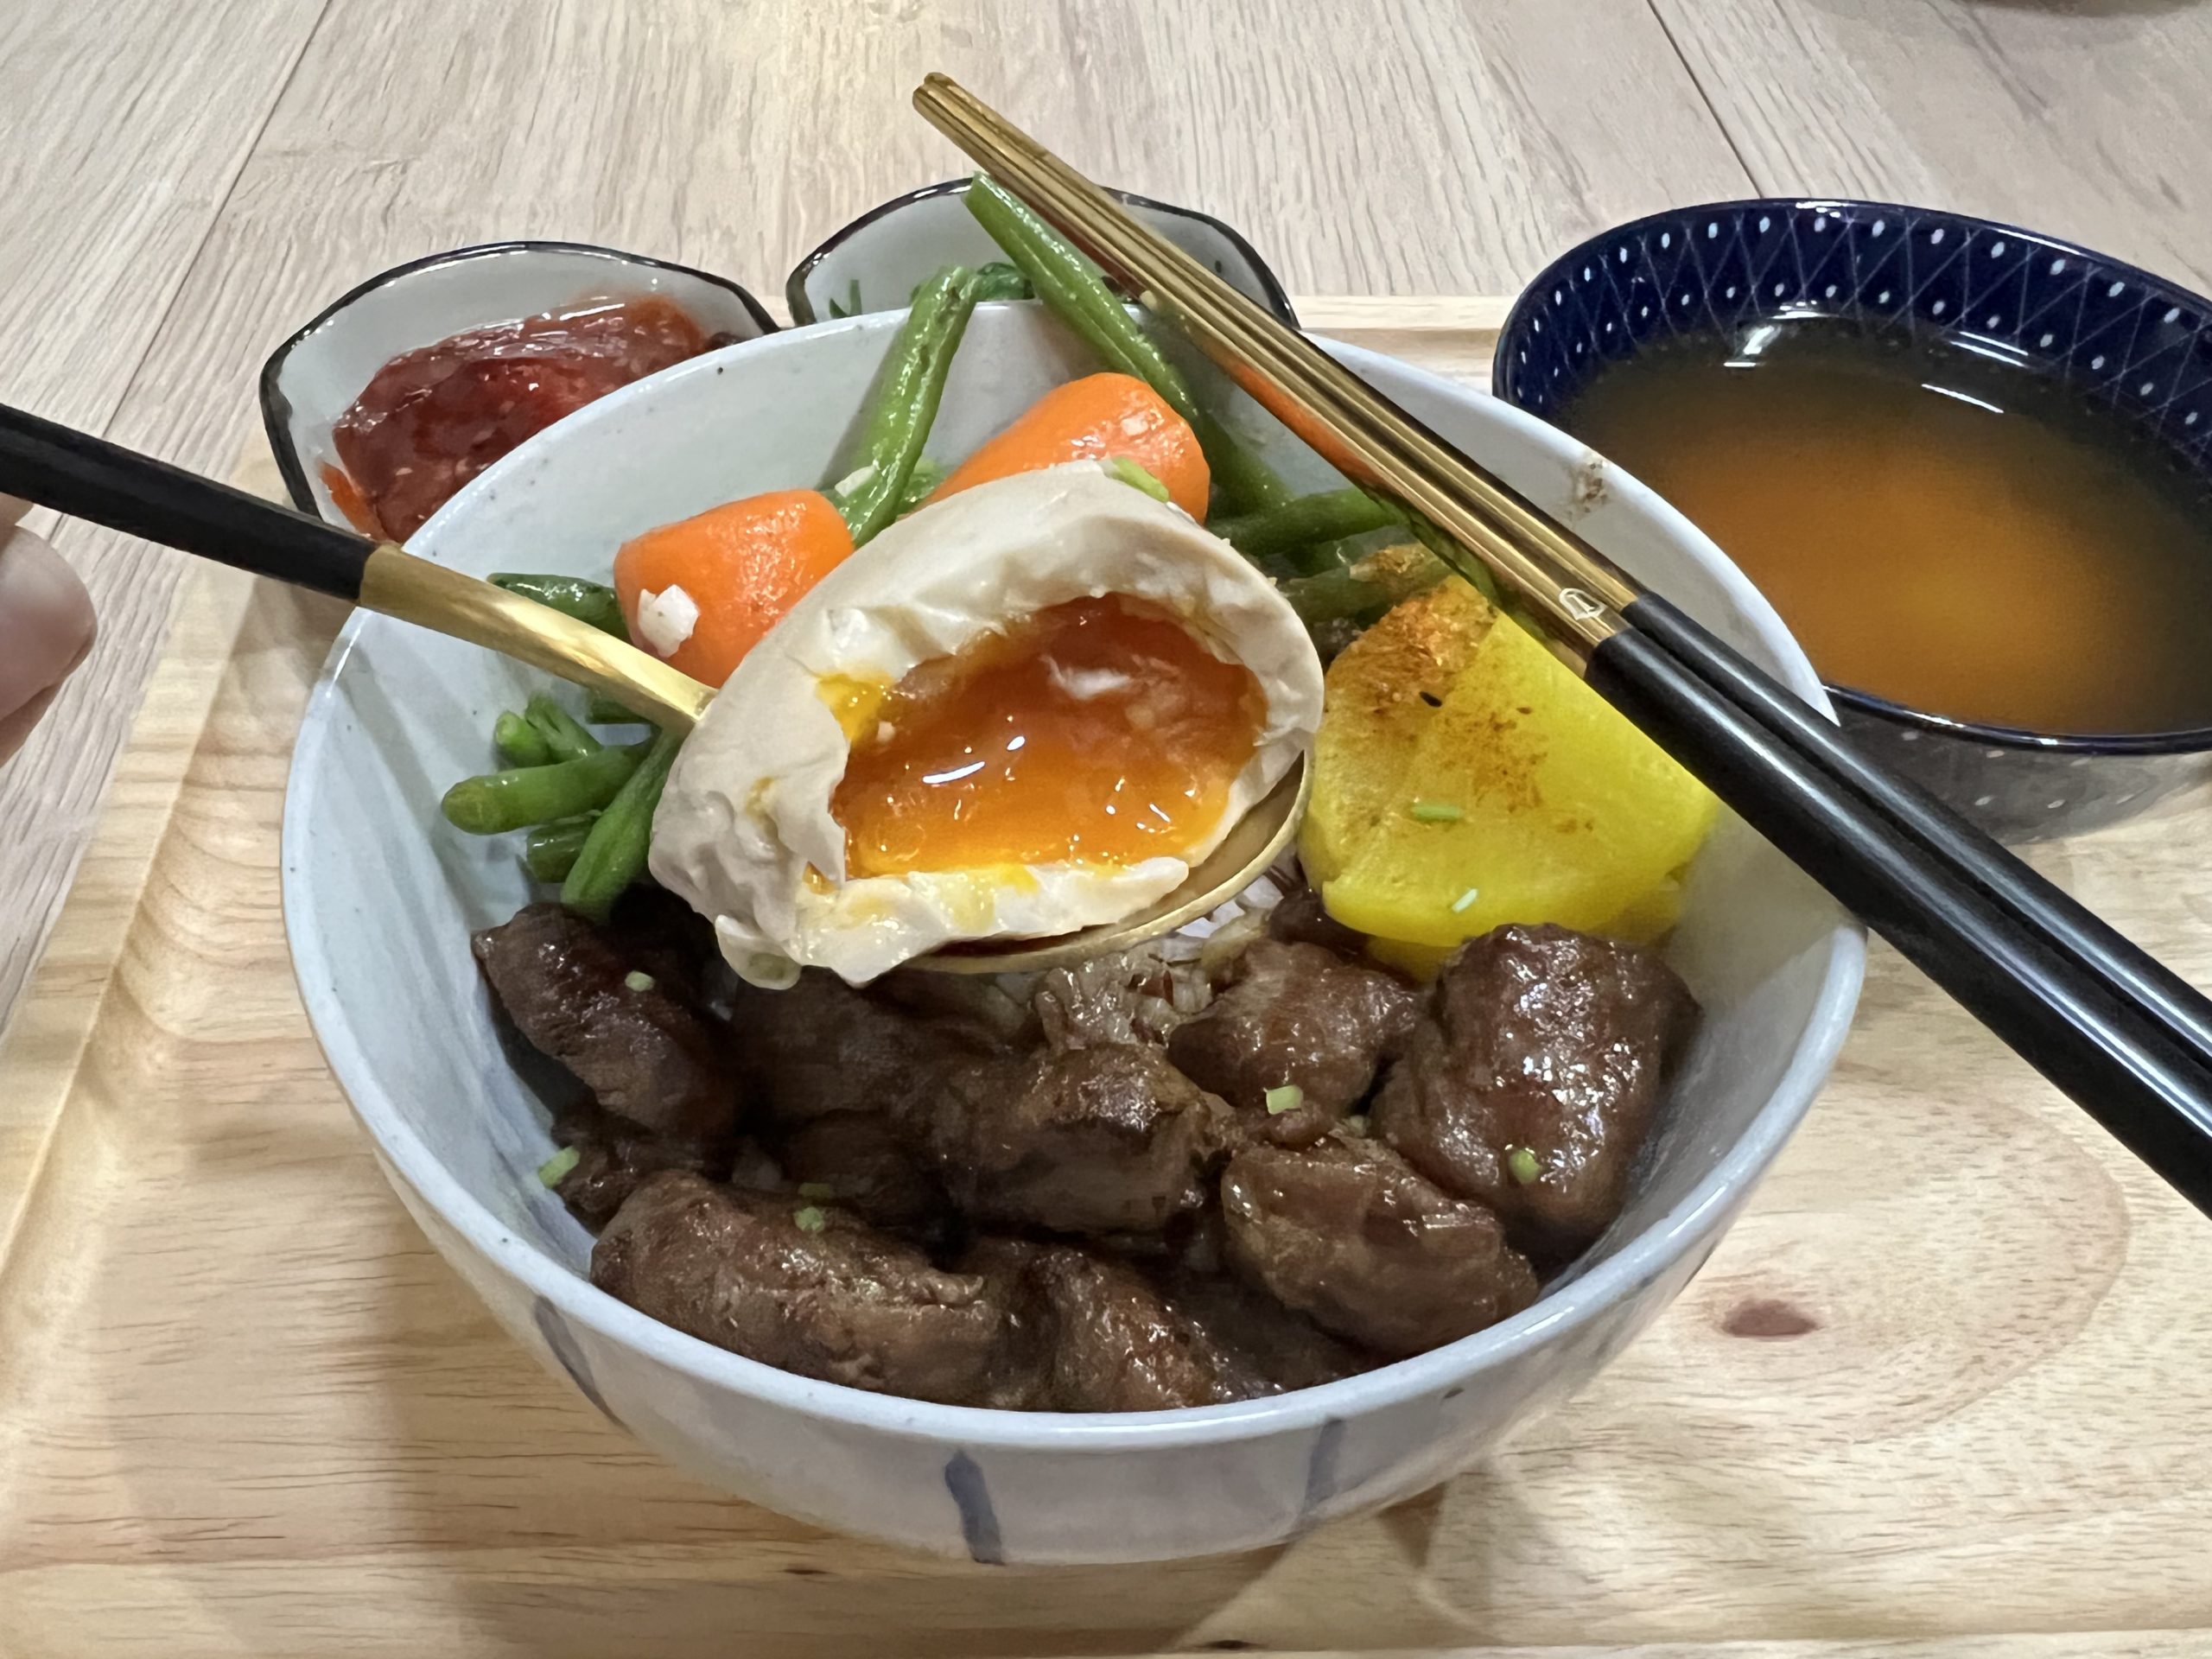 Beef Teriyaki Bowl (with friendship and sake)